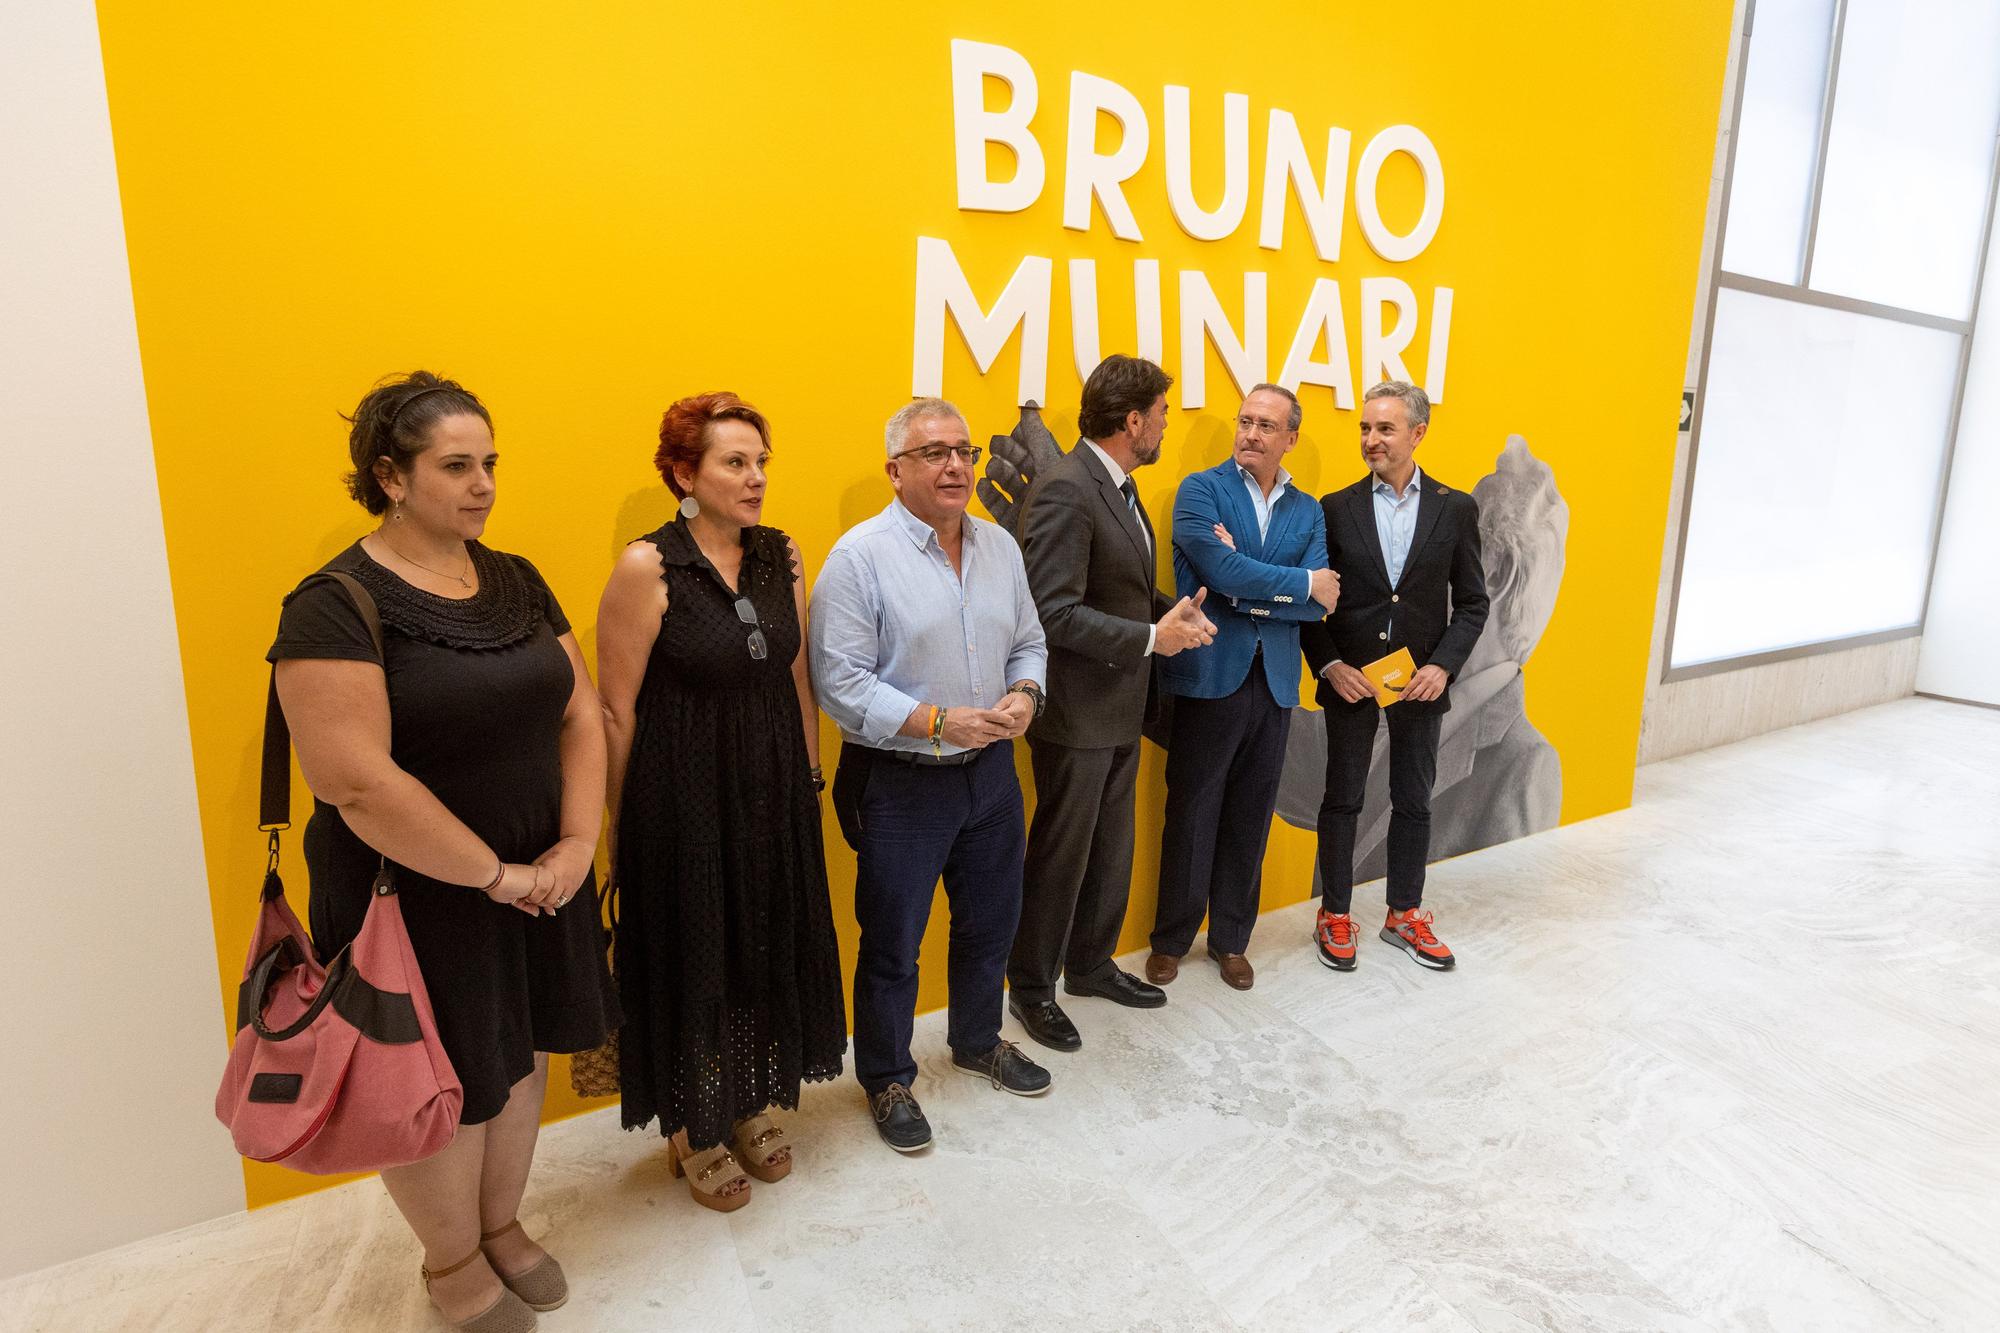 El MACA rompe el maleficio de Bruno Munari